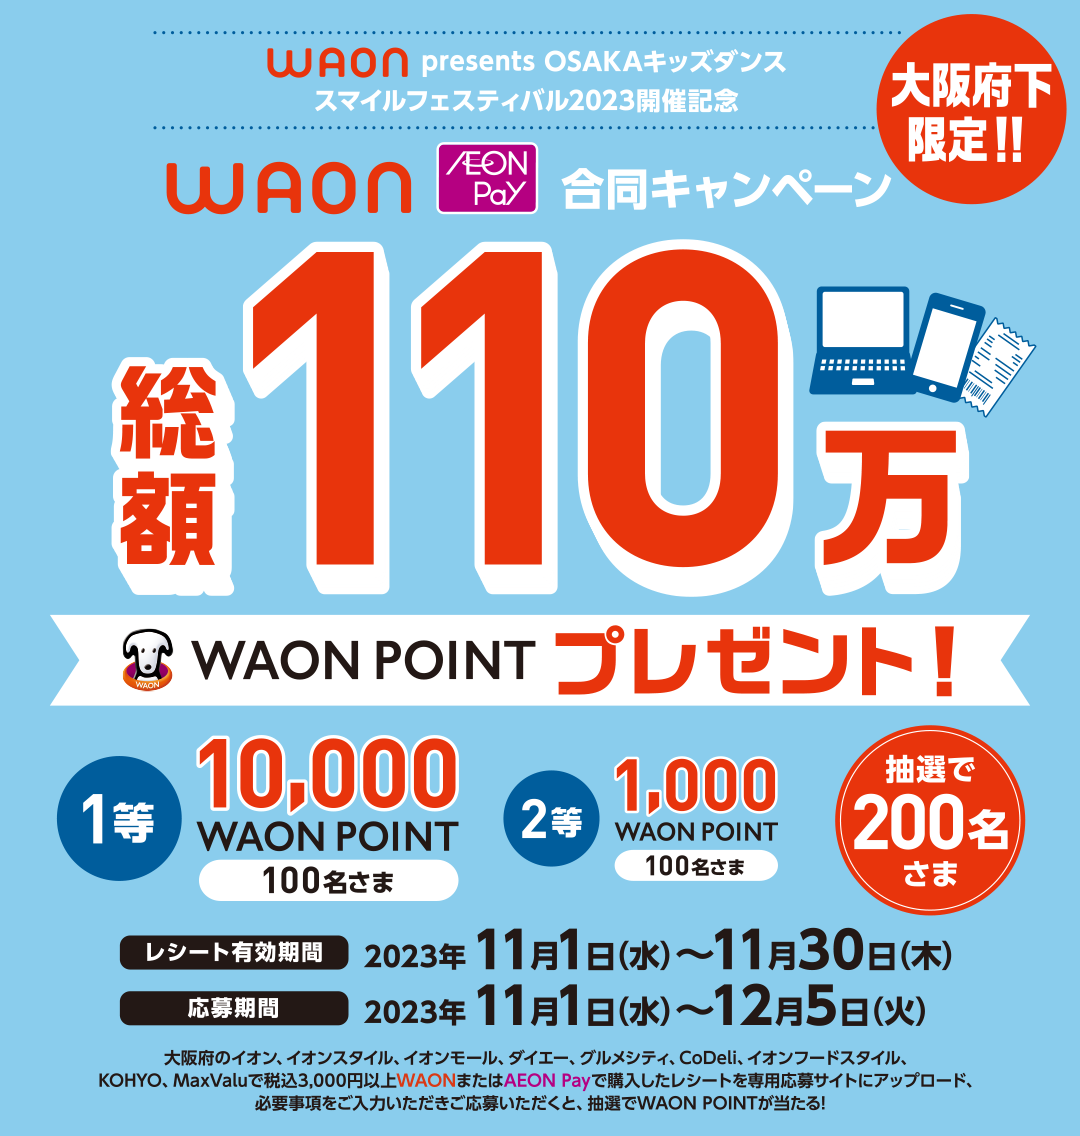 大阪府下限定!!WAON presents OSAKAキッズダンス・スマイルフェスティバル2023開催記念 WAON・AEON Pay合同キャンペーン